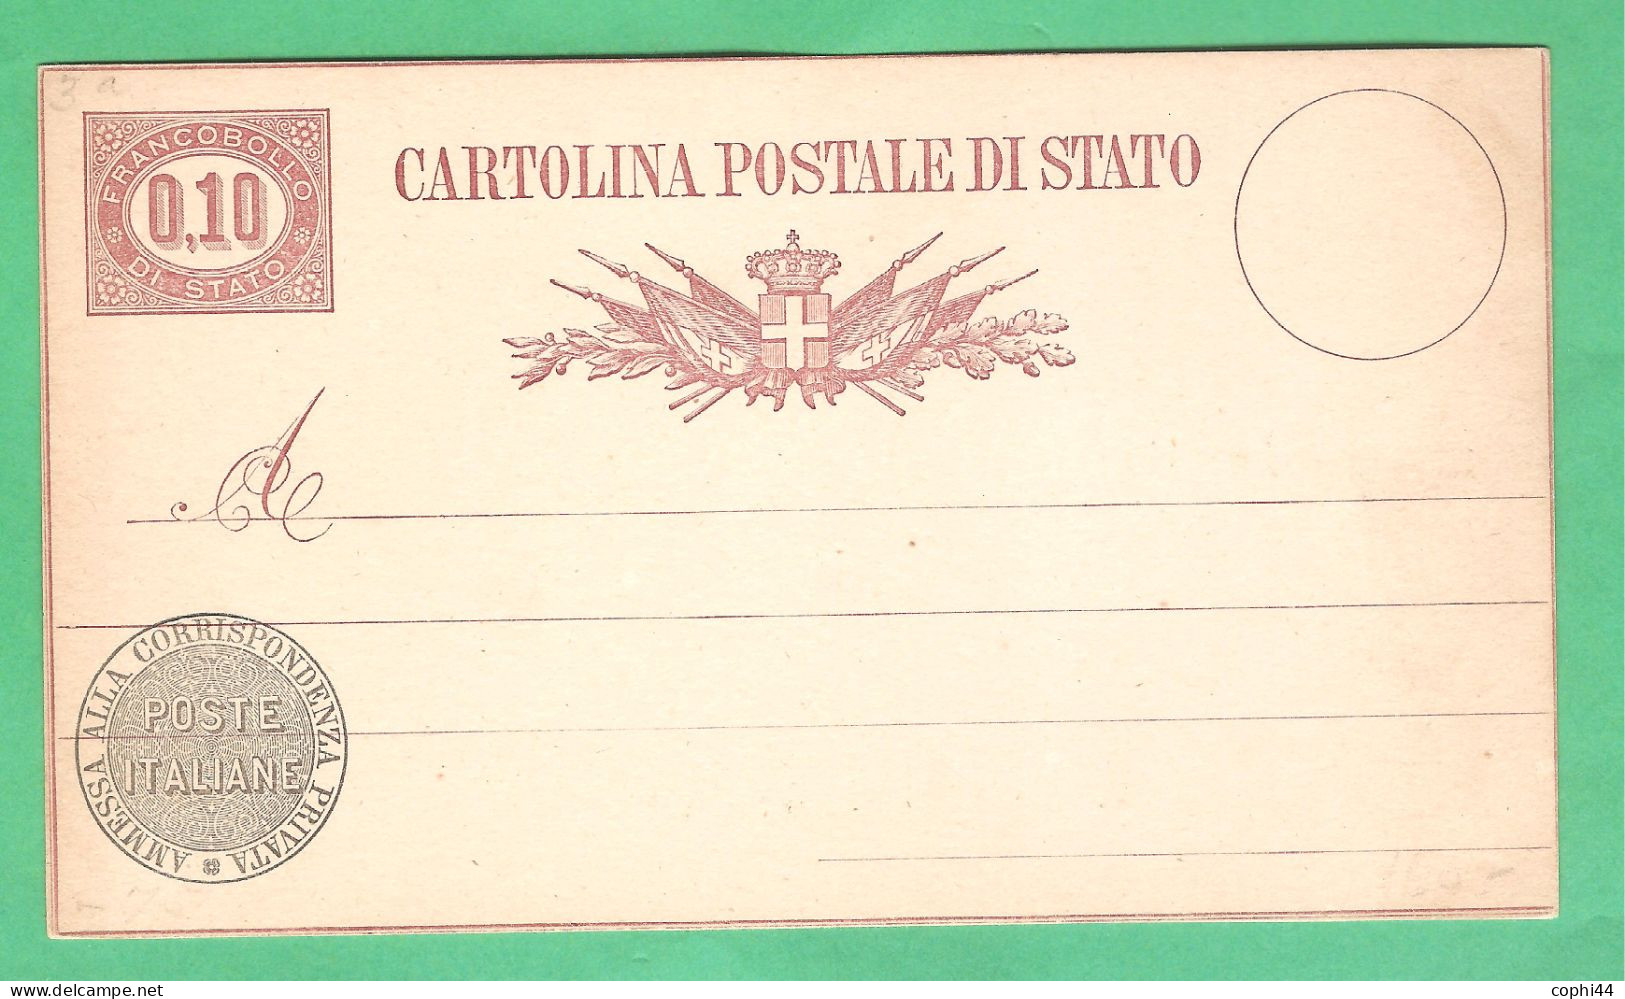 REGNO D'ITALIA 1877 VEII CARTOLINA POSTALE SERVIZIO DI STATO N. 3 Lire 0,10 NUOVA 2 FILETTI BUONE CONDIZIONI - Postwaardestukken